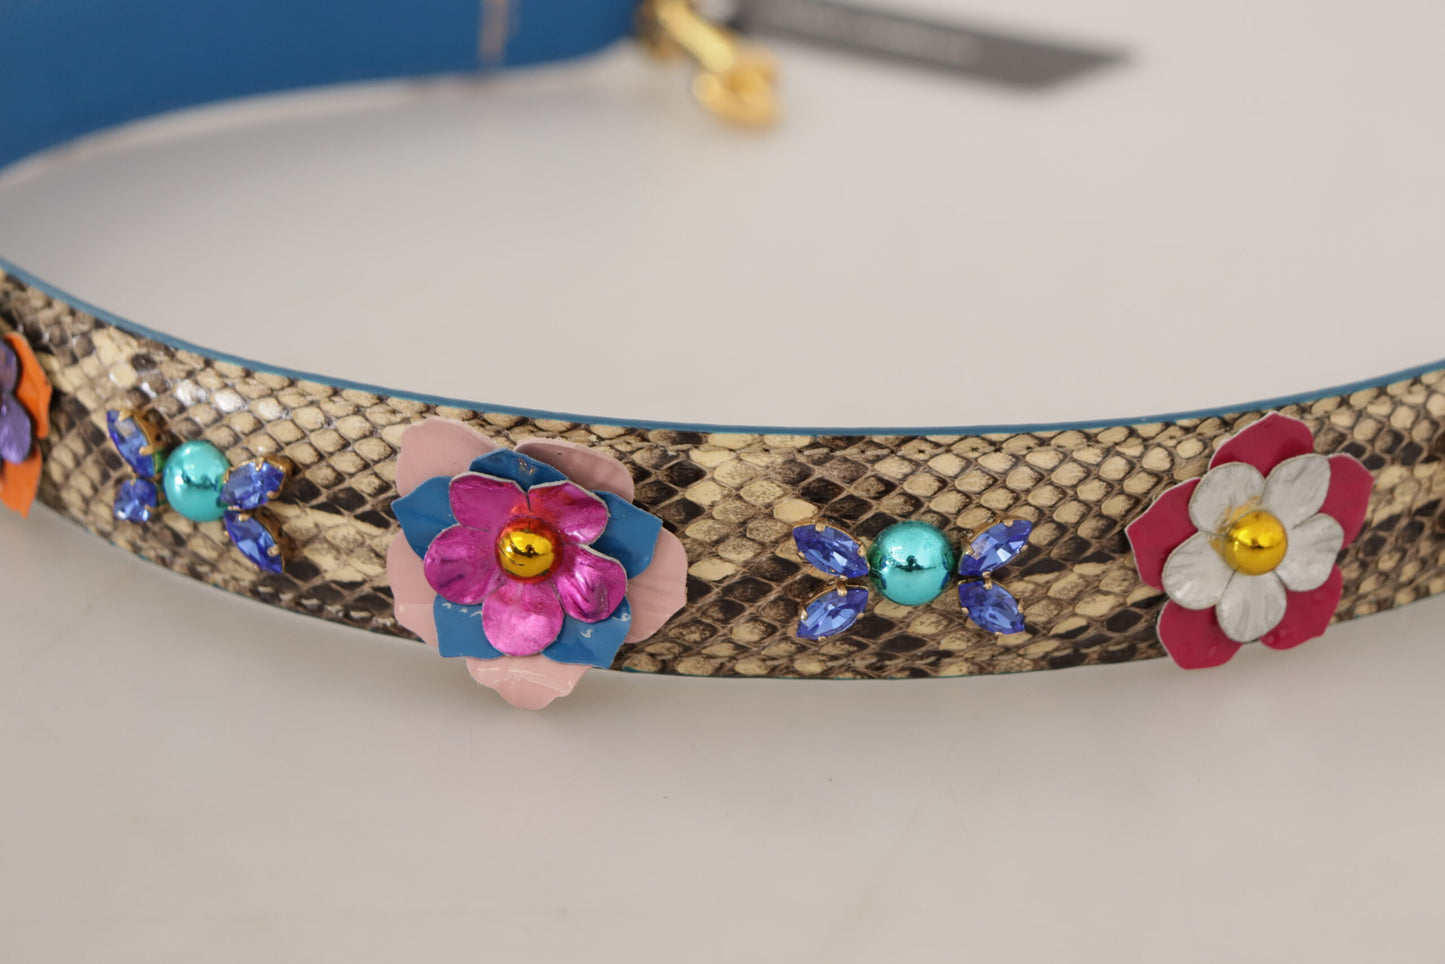 Dolce & Gabbana Beige Python in pelle Python Floral Shoted Cinp